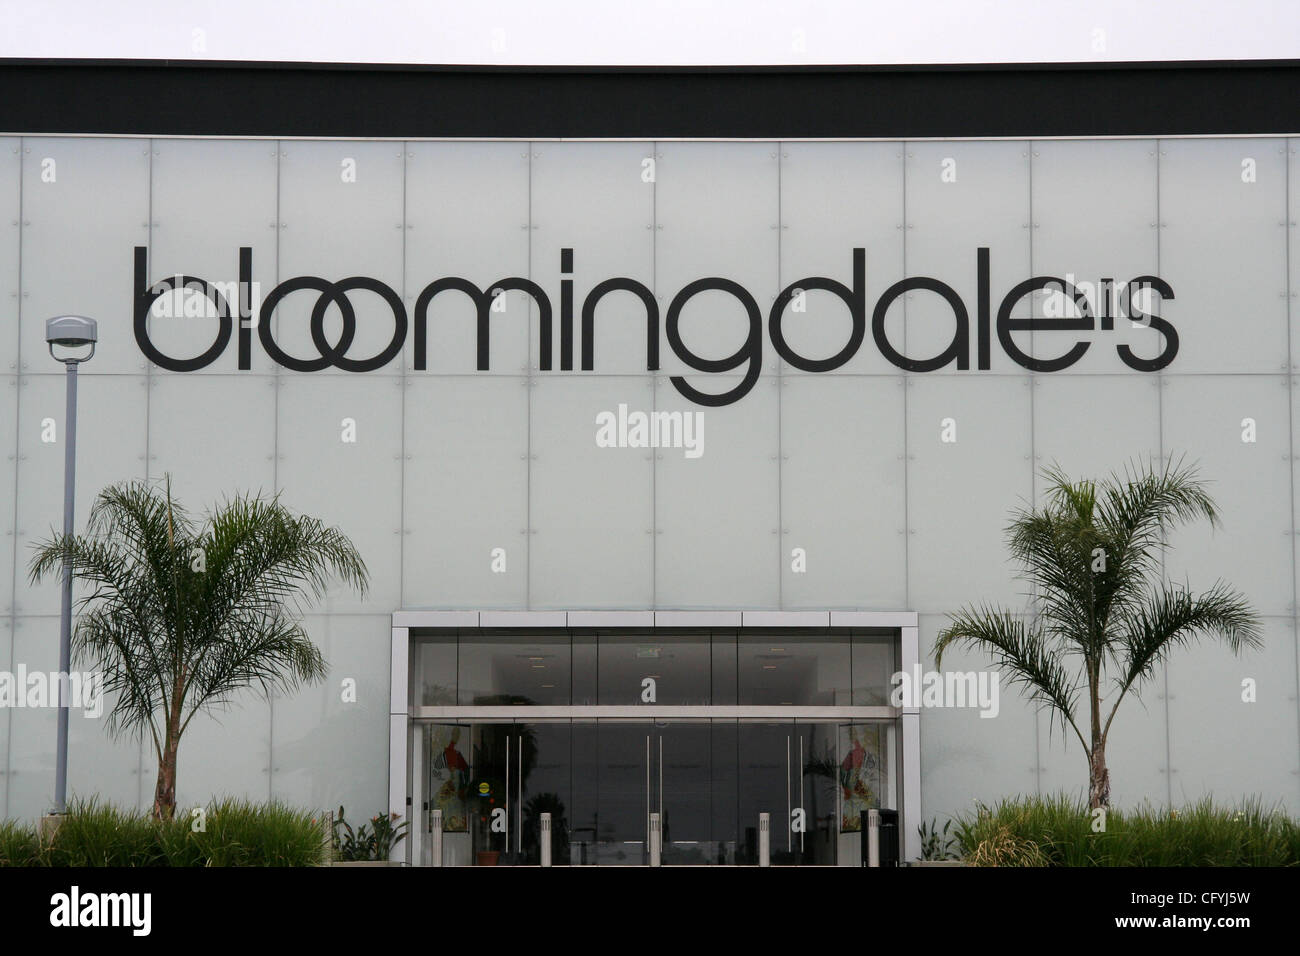 20. Mai 2007 - Costa Mesa, CA, USA - Bloomingdales ist eine Kette von gehobenen amerikanischen Kaufhäusern im Besitz von Federated Department Stores, ist auch die Muttergesellschaft von Macy's. Bloomingdale's hat 36 Filialen bundesweit, mit einem jährlichen Umsatz von 1,9 Milliarden US-Dollar.  Im Bild: Bloomingdales speichern Stockfoto